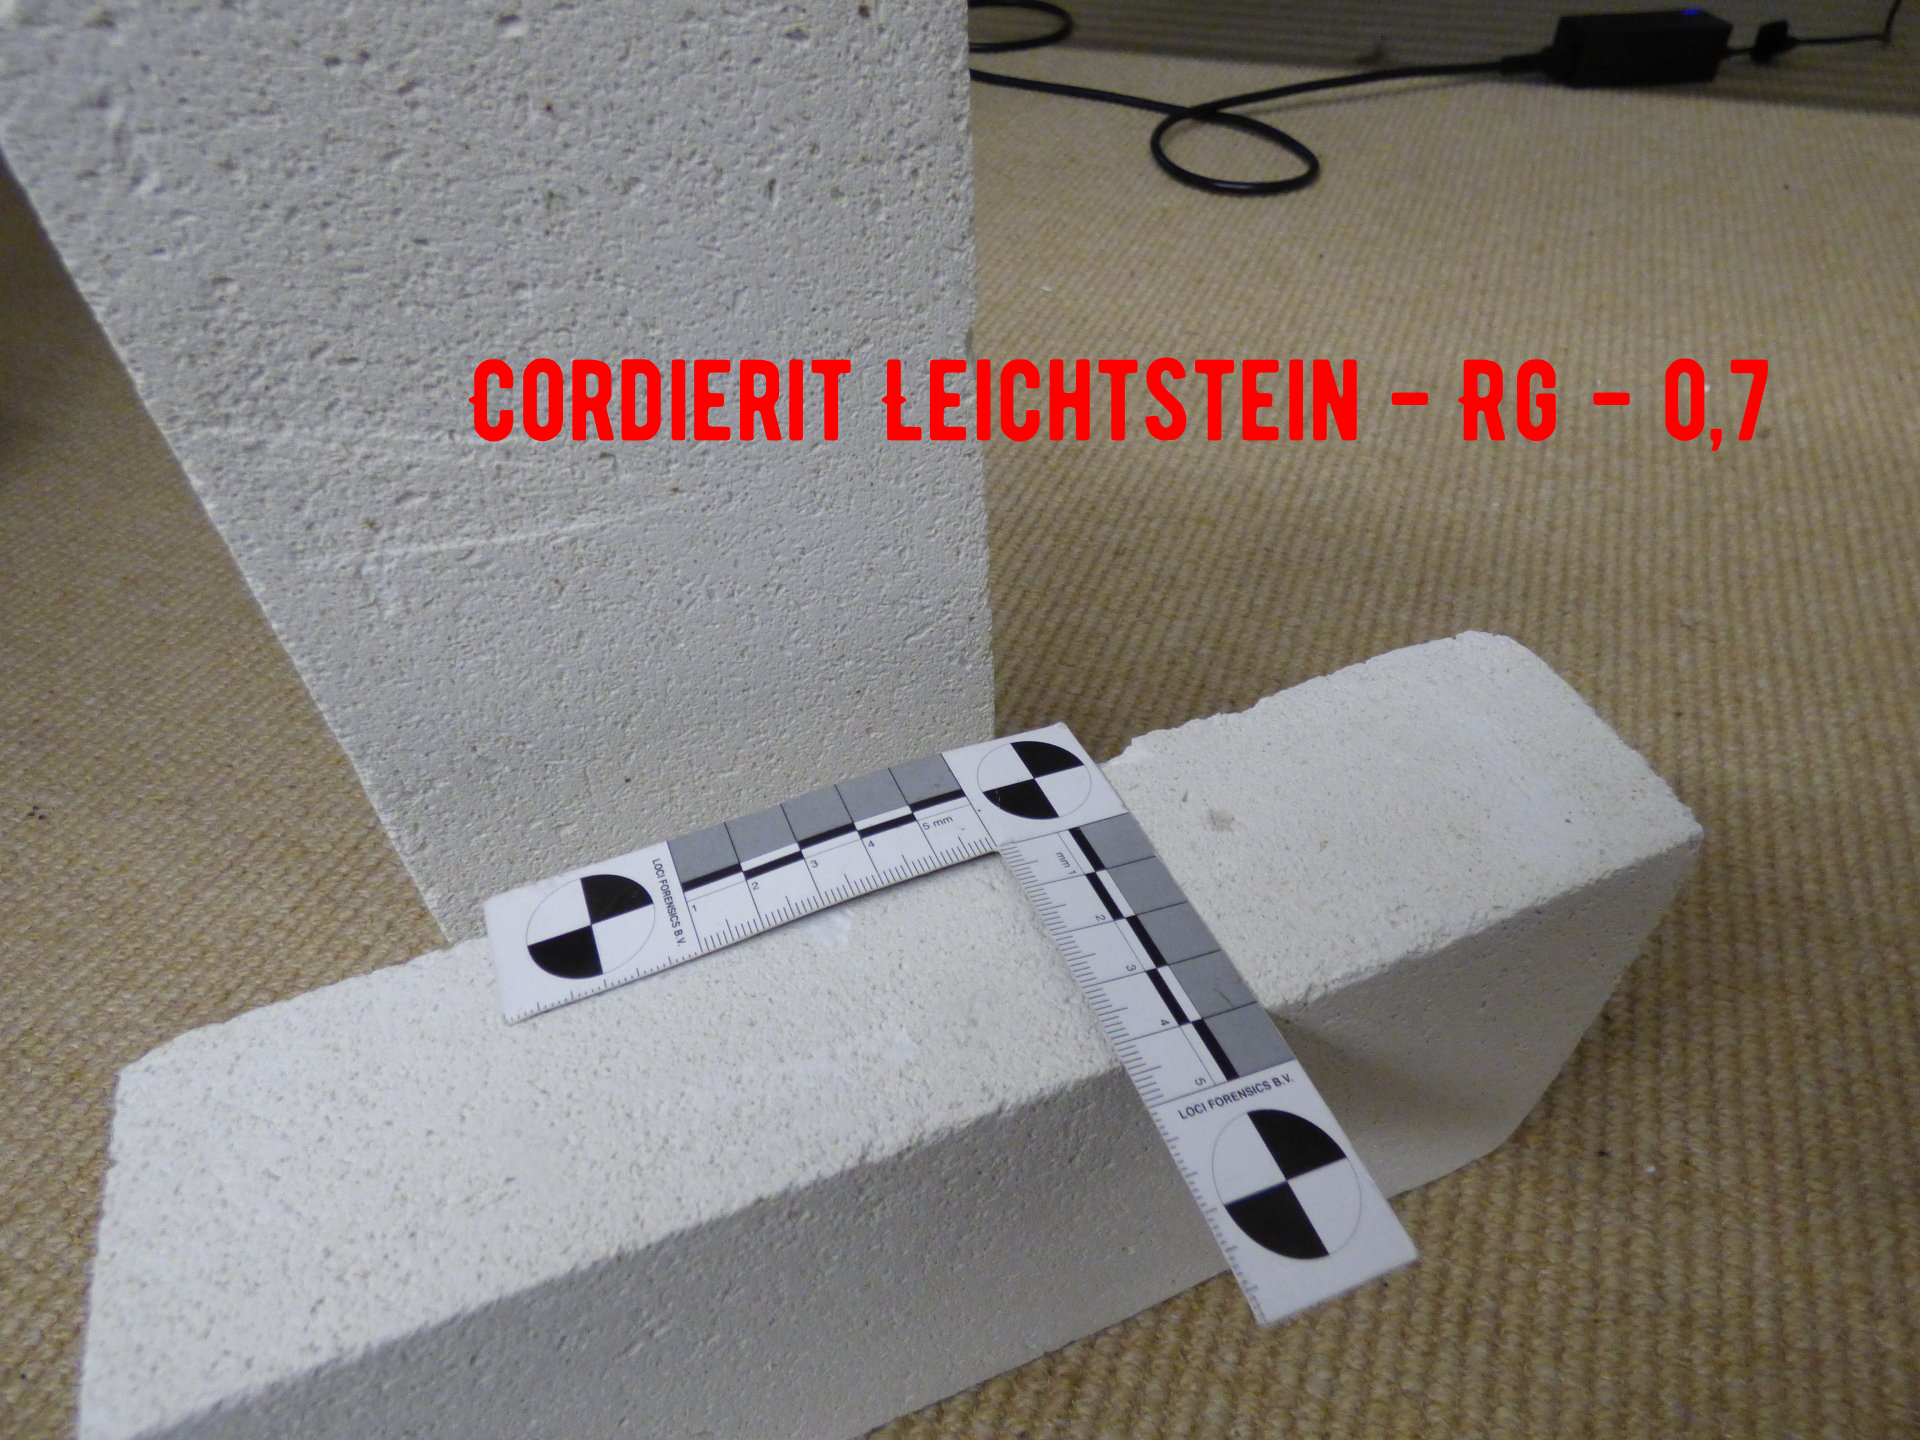 Feuerleichtstein - insulating firelight brick Cordierite